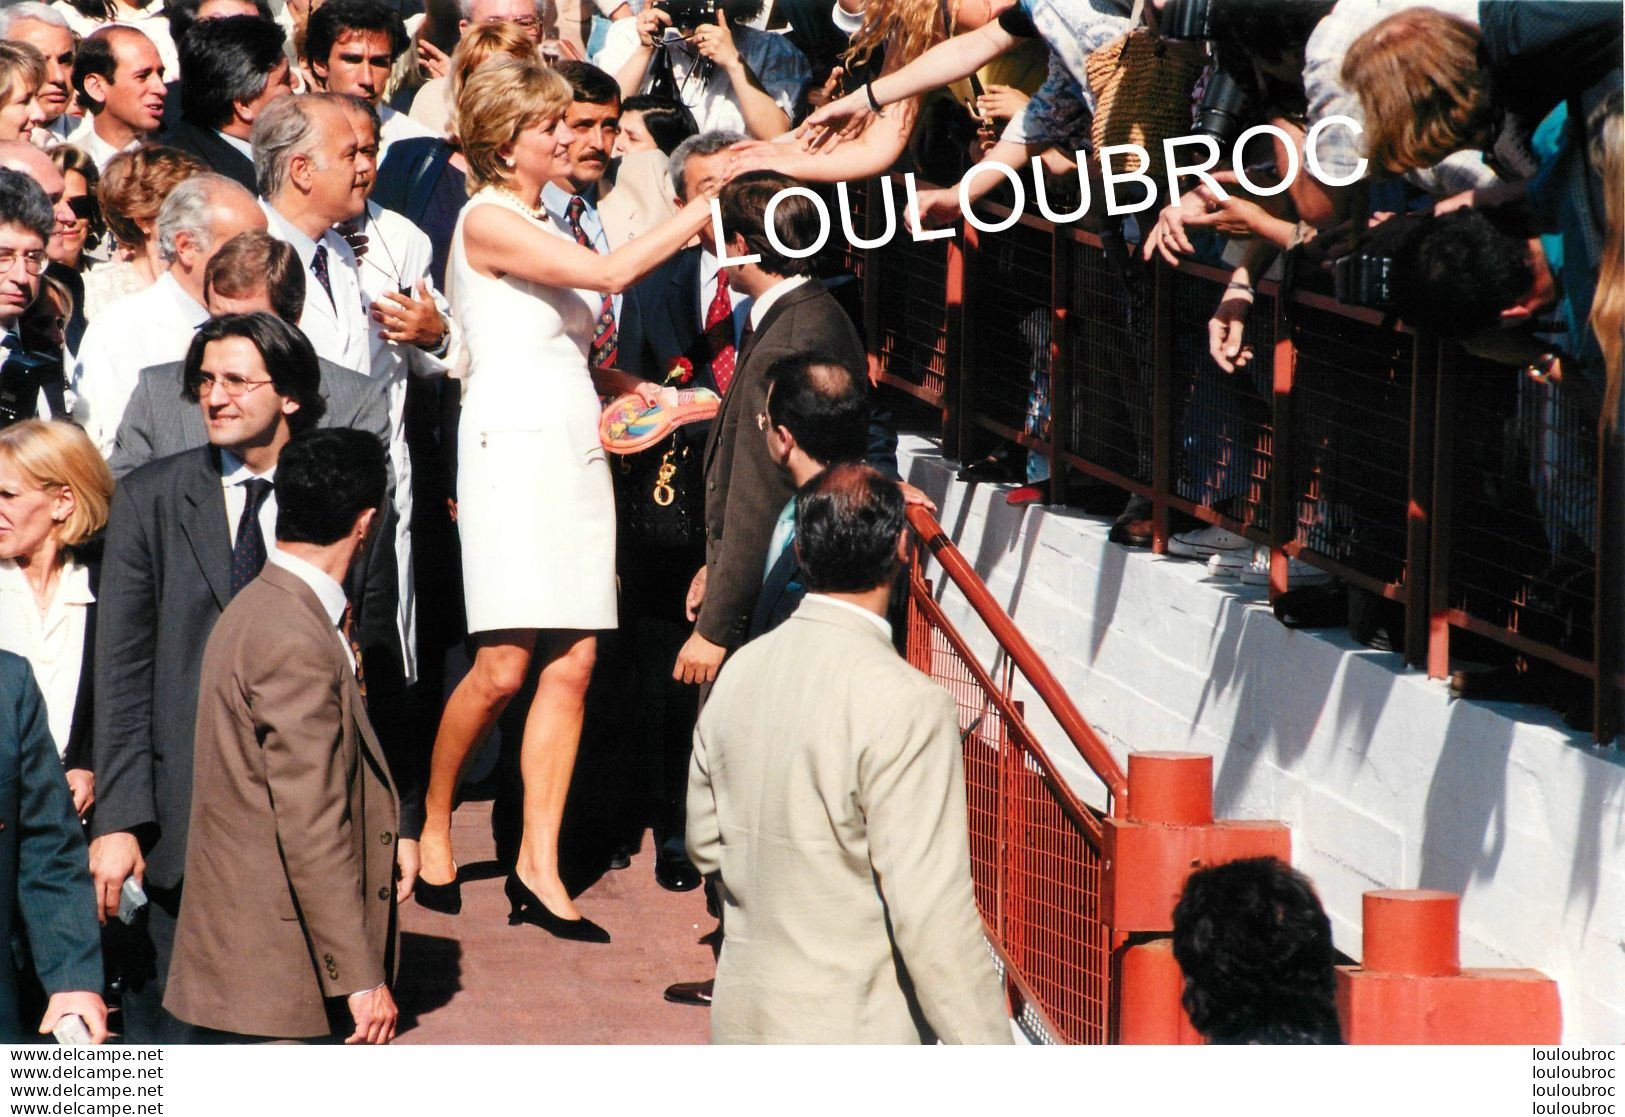 LADY DIANA LADY DI  VISITE OFFICIELLE EN ARGENTINE 11/1995 PHOTO DE PRESSE ANGELI 27 X 18 CM R2 - Célébrités